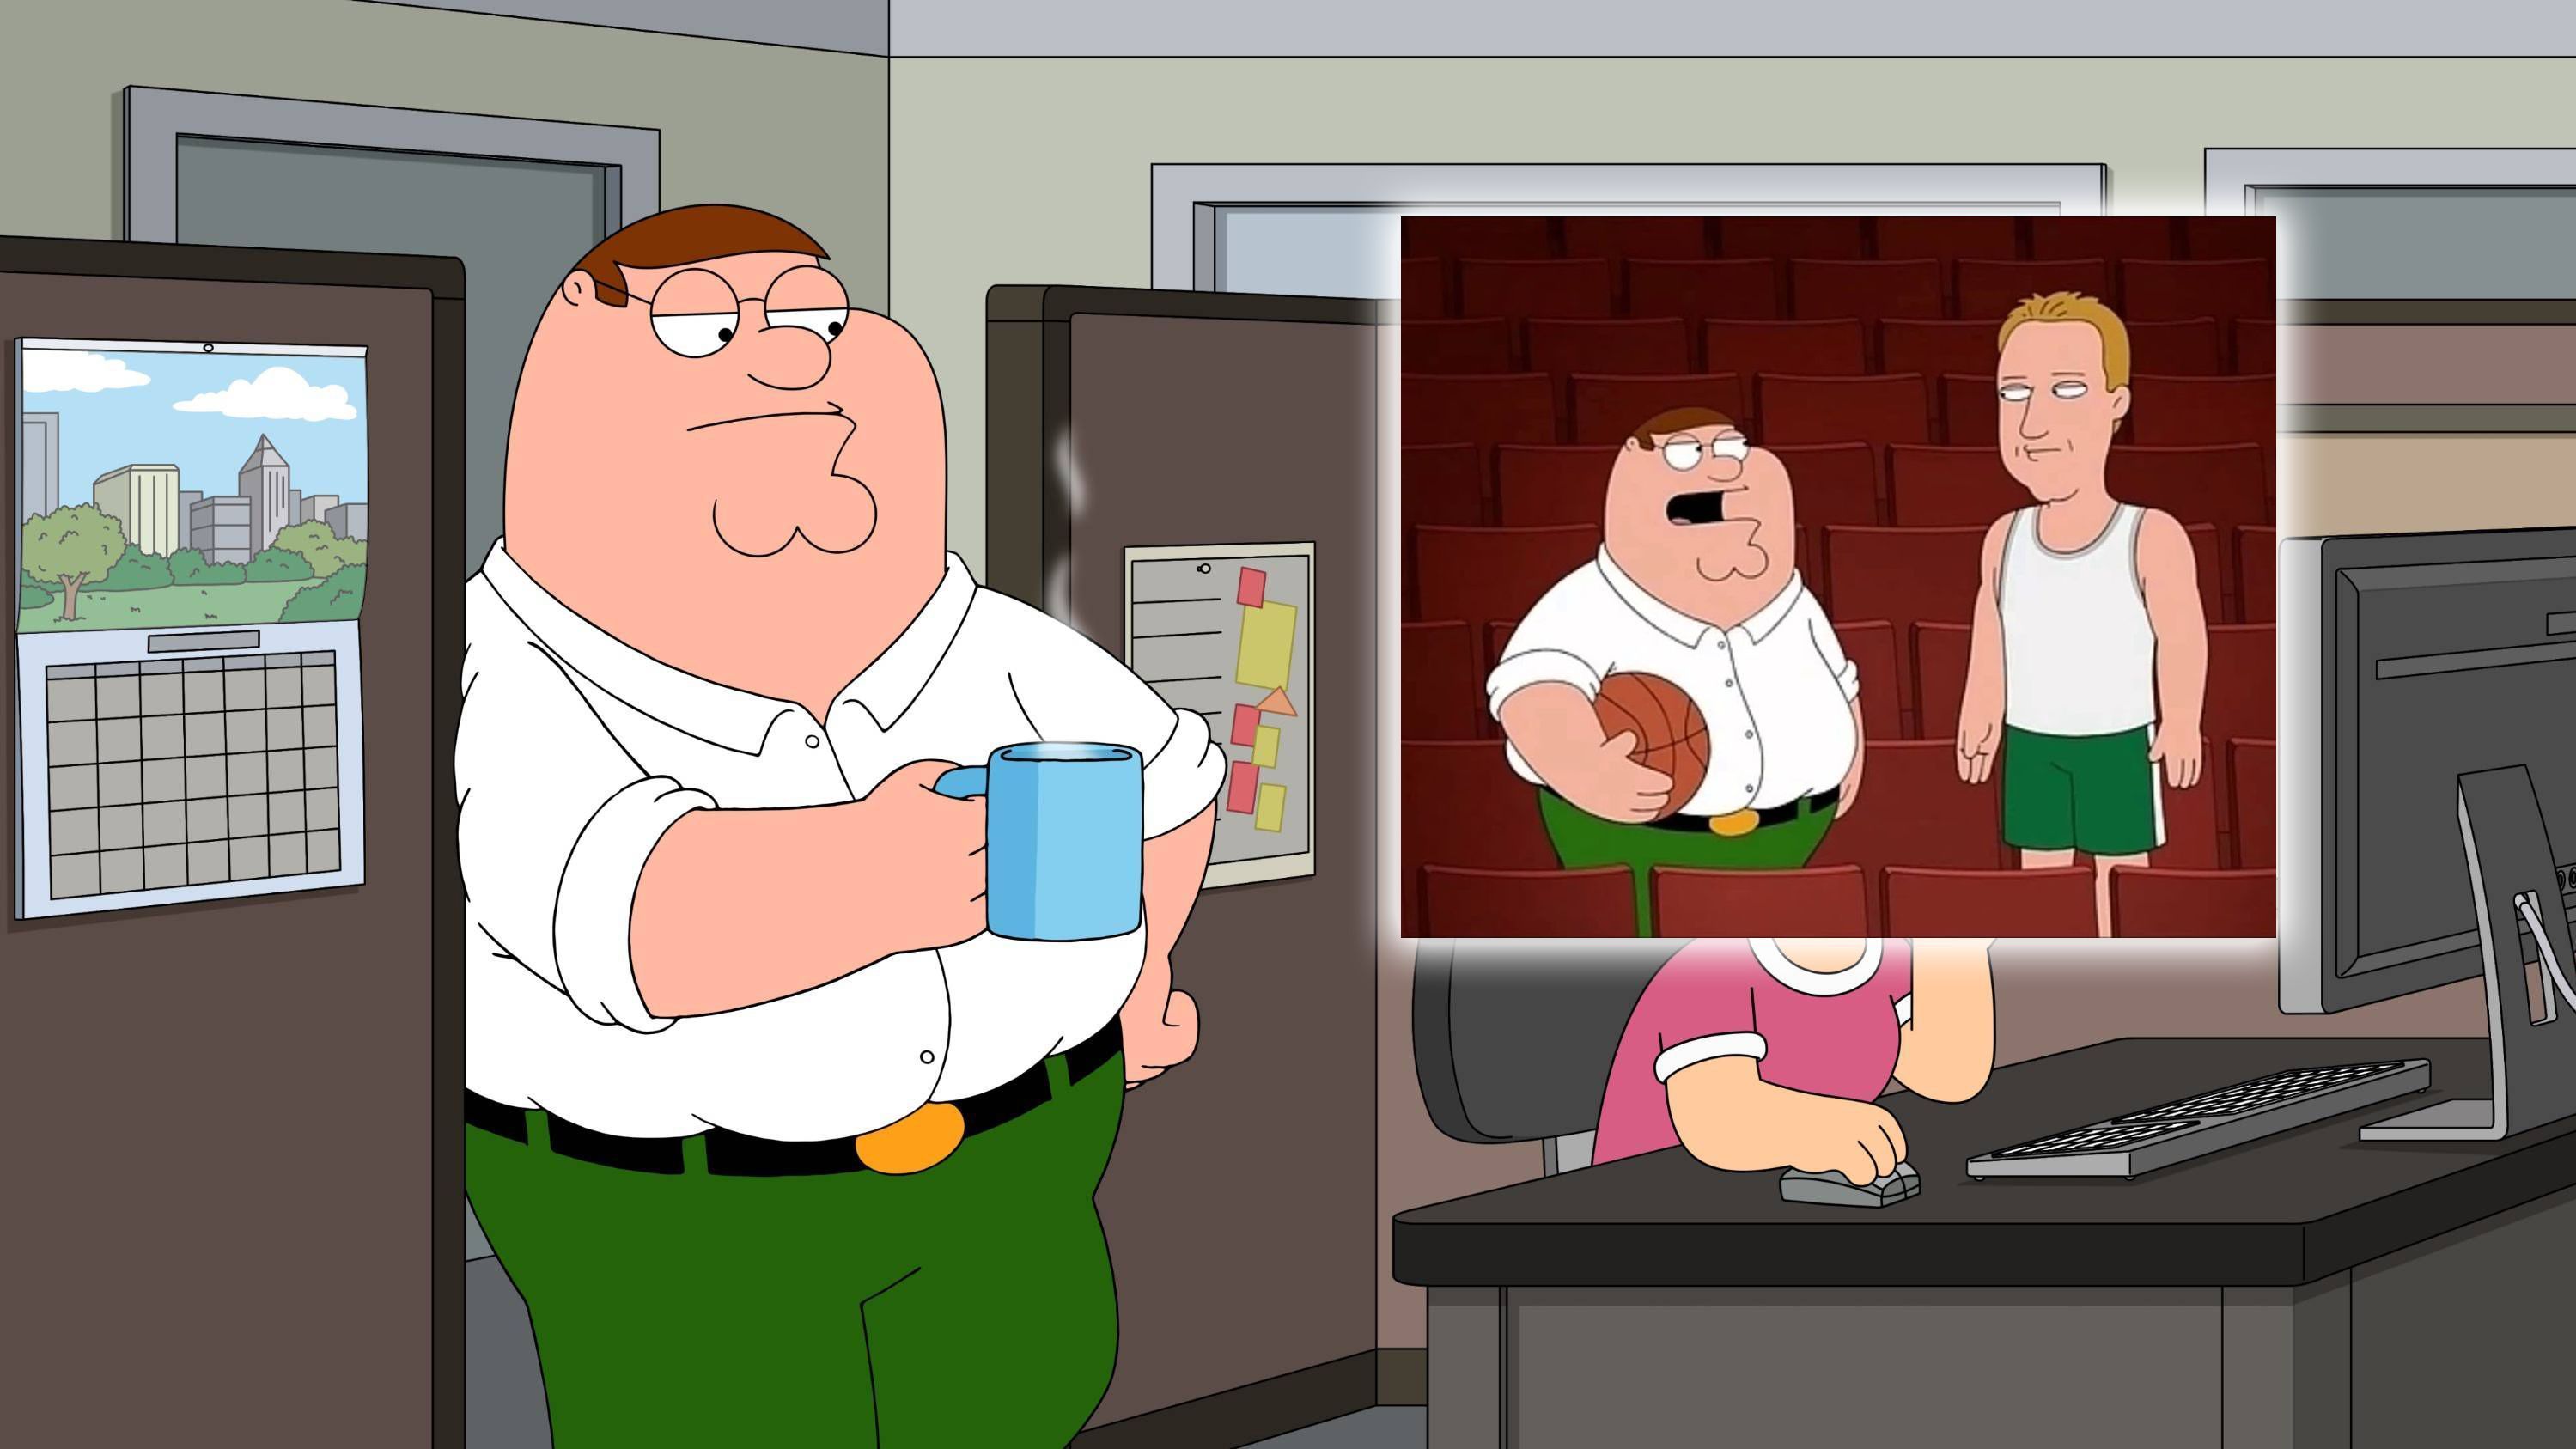 <strong>Boston Celtics – Peter Griffin („Family Guy“)</strong><br>In gleich mehreren Folgen tauchen die Boston Celtics bei Family Guy auf. Hauptcharakter Peter Griffin stellt sich in einer davon vor, Spieler der Franchise zu sein. Das sollte ja wohl reichen, um ihn als Fan zu bezeichnen.